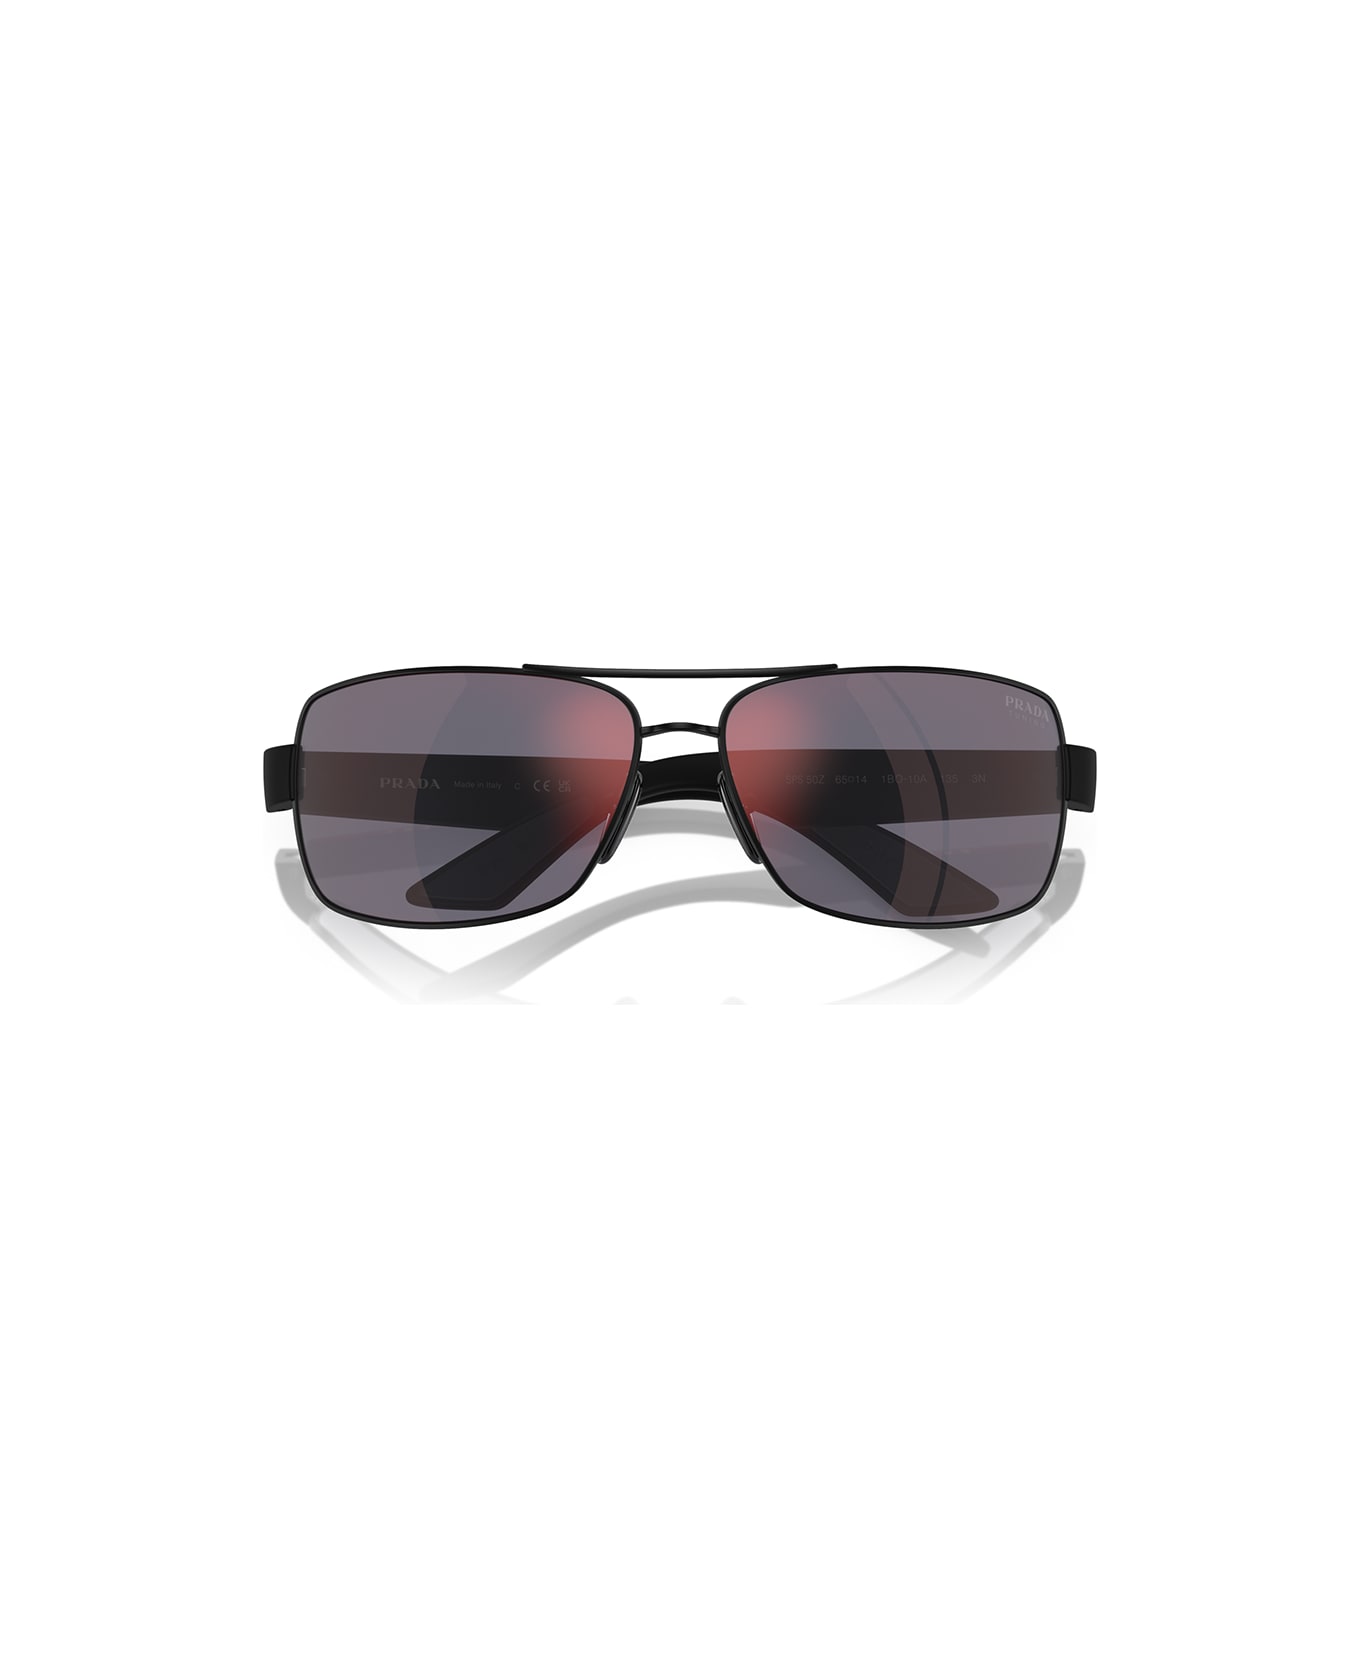 Prada Linea Rossa Sunglasses - Nero/Rosso specchiato